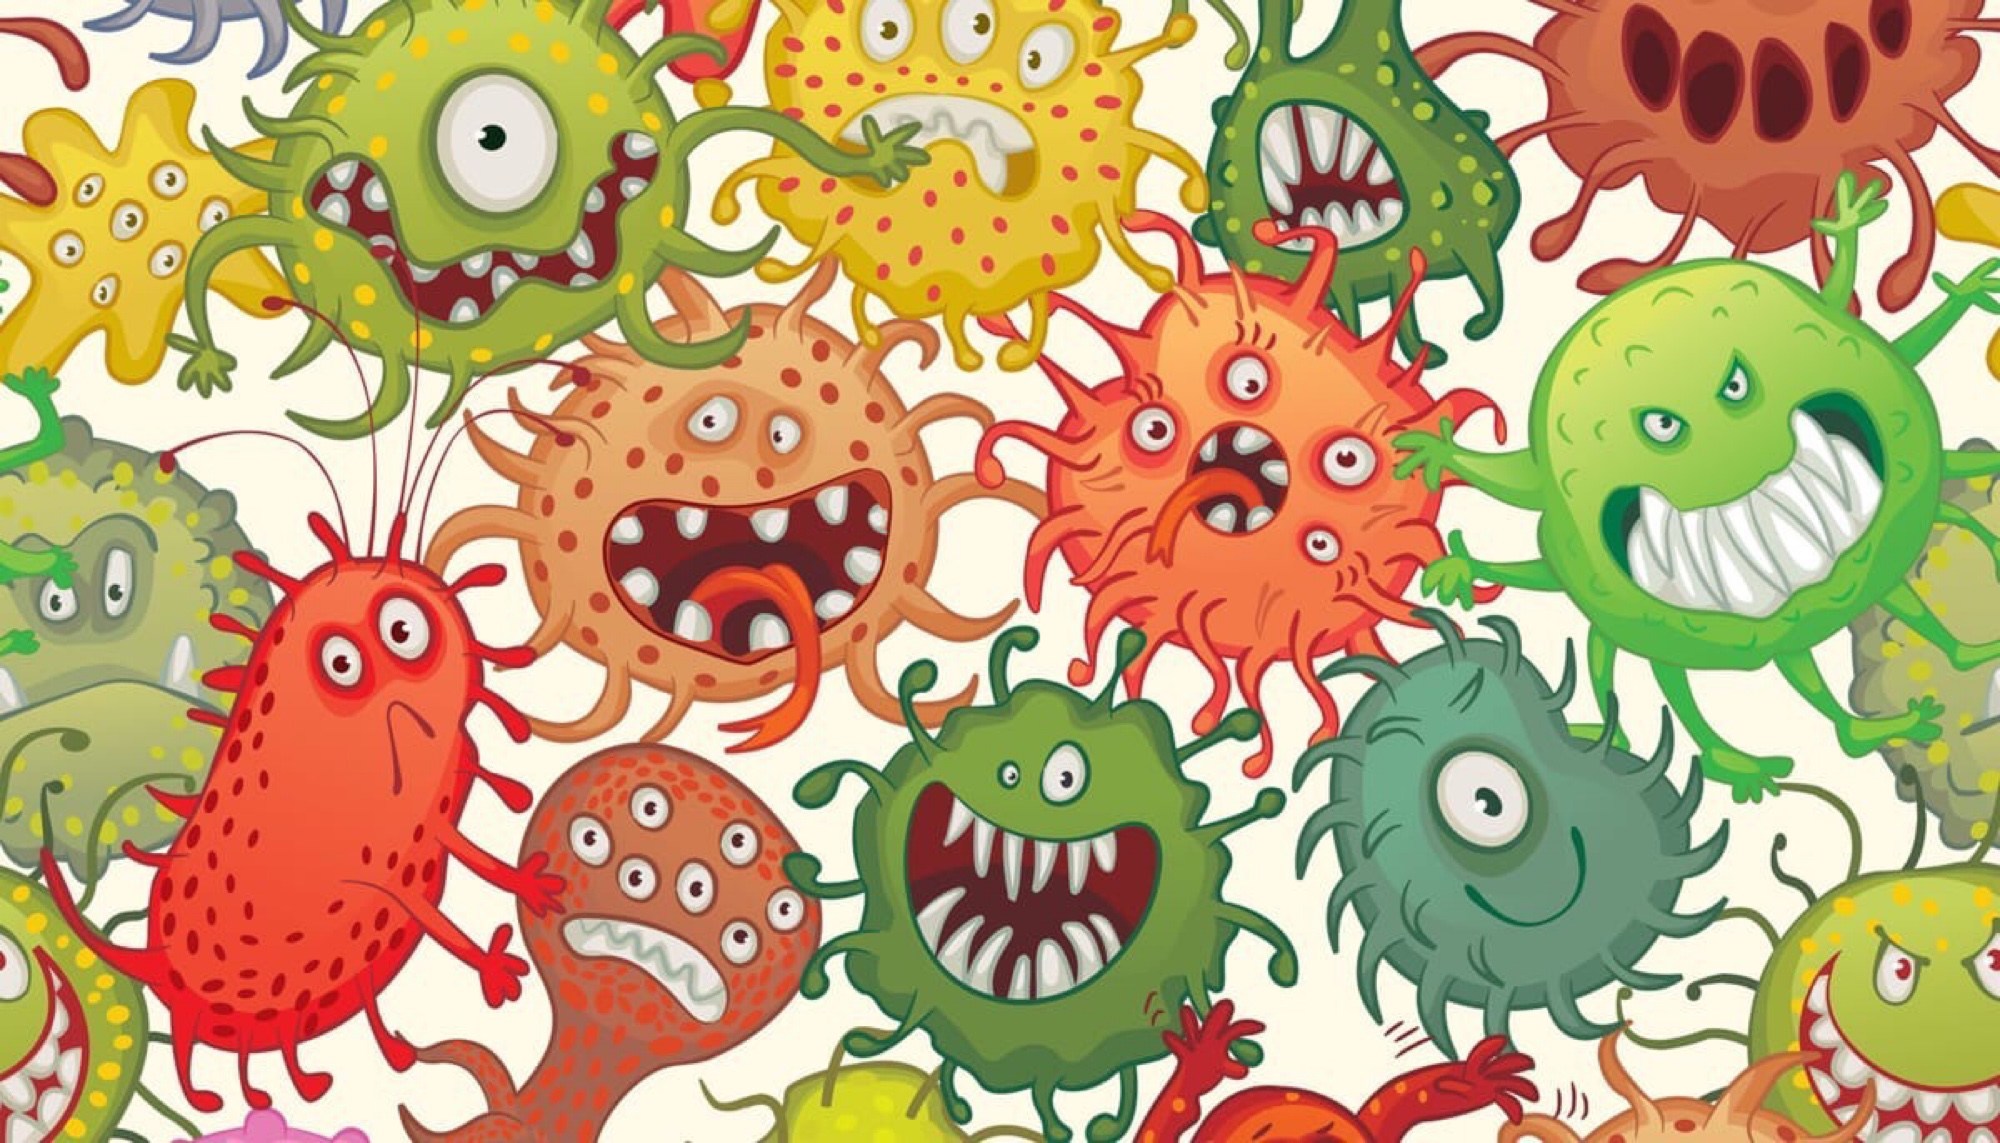 Virus art. Веселые микробы. Вирусы и микробы для детей. Злая бактерия. Микробы мультяшные.